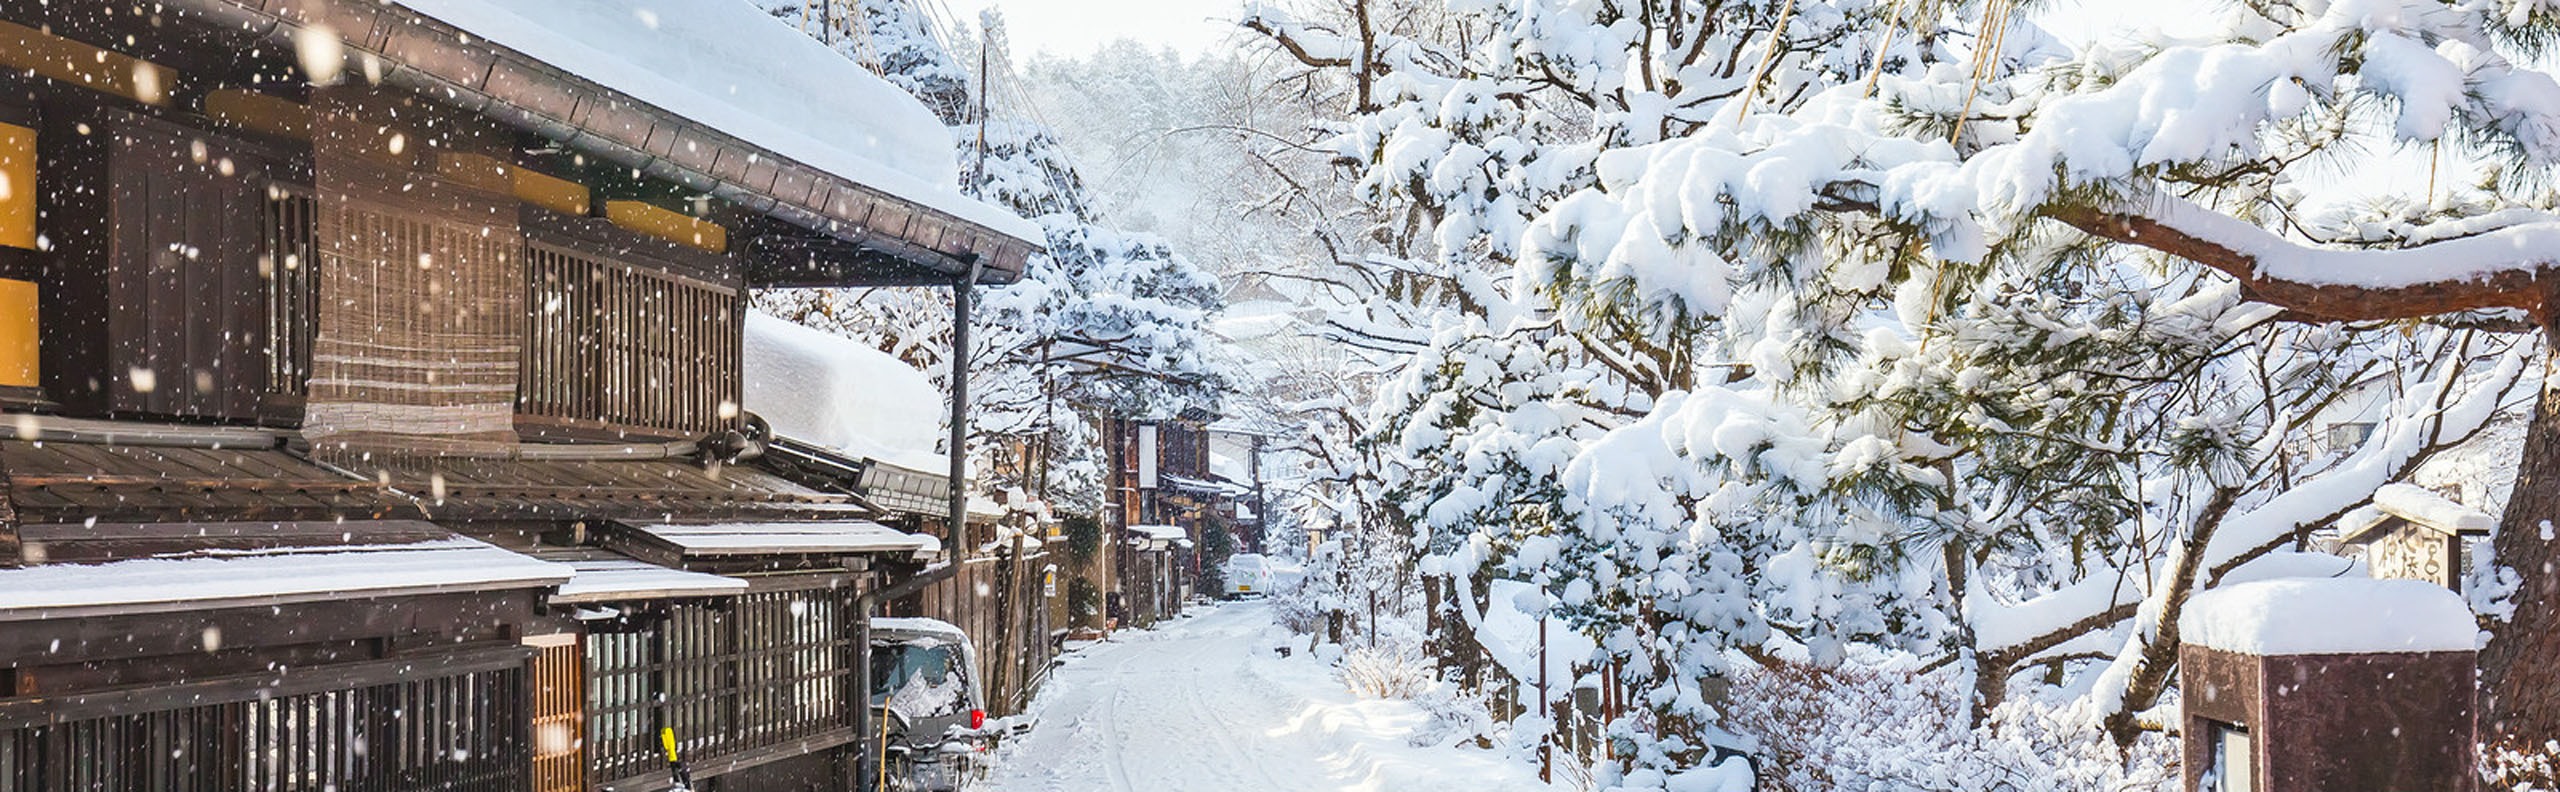 Top Winter Destinations in Japan 